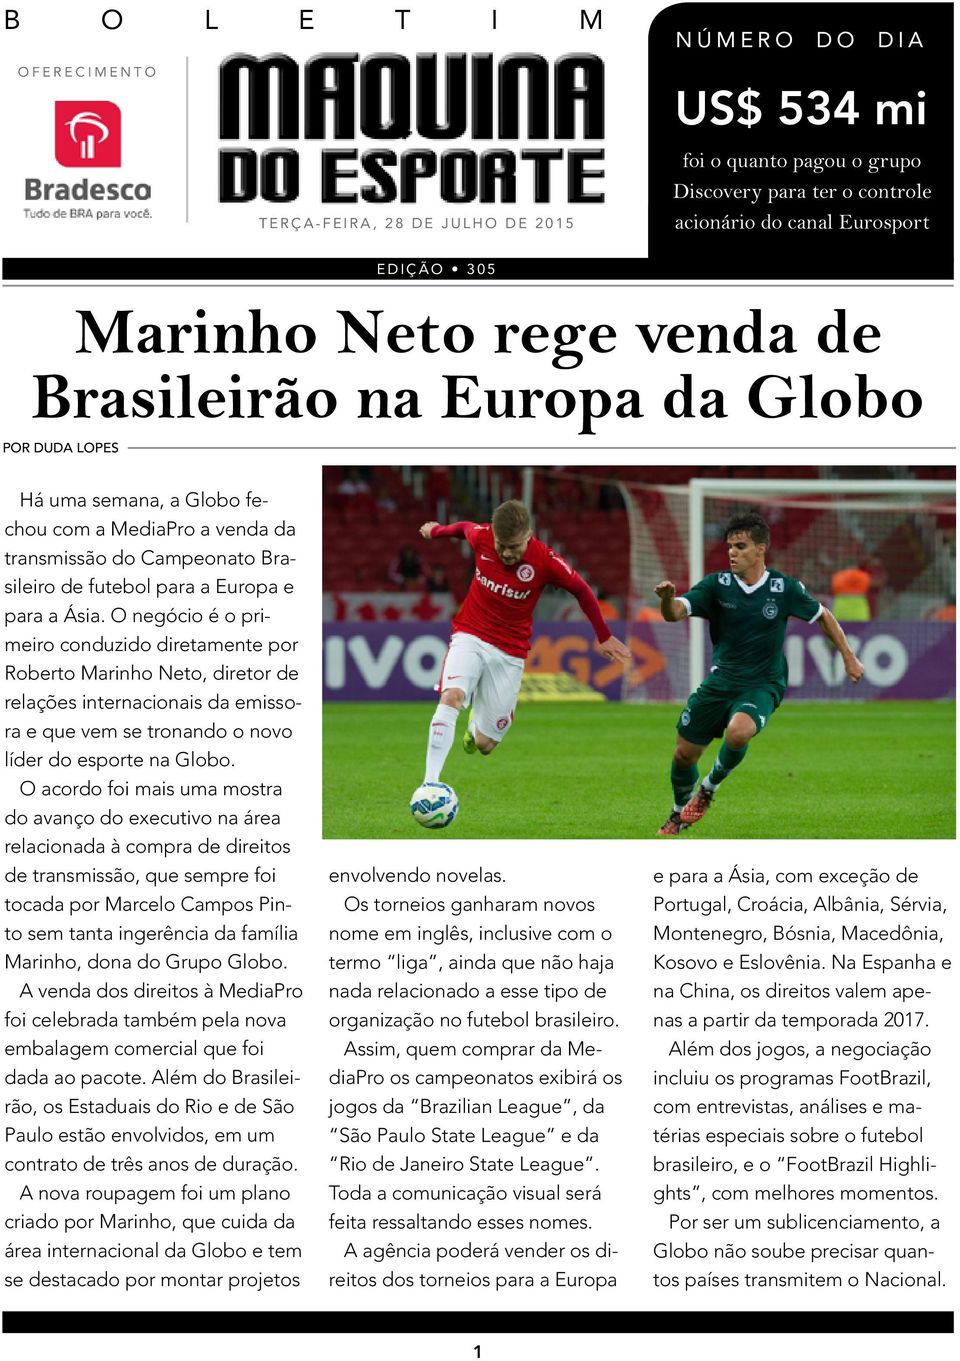 O negócio é o primeiro conduzido diretamente por Roberto Marinho Neto, diretor de relações internacionais da emissora e que vem se tronando o novo líder do esporte na Globo.